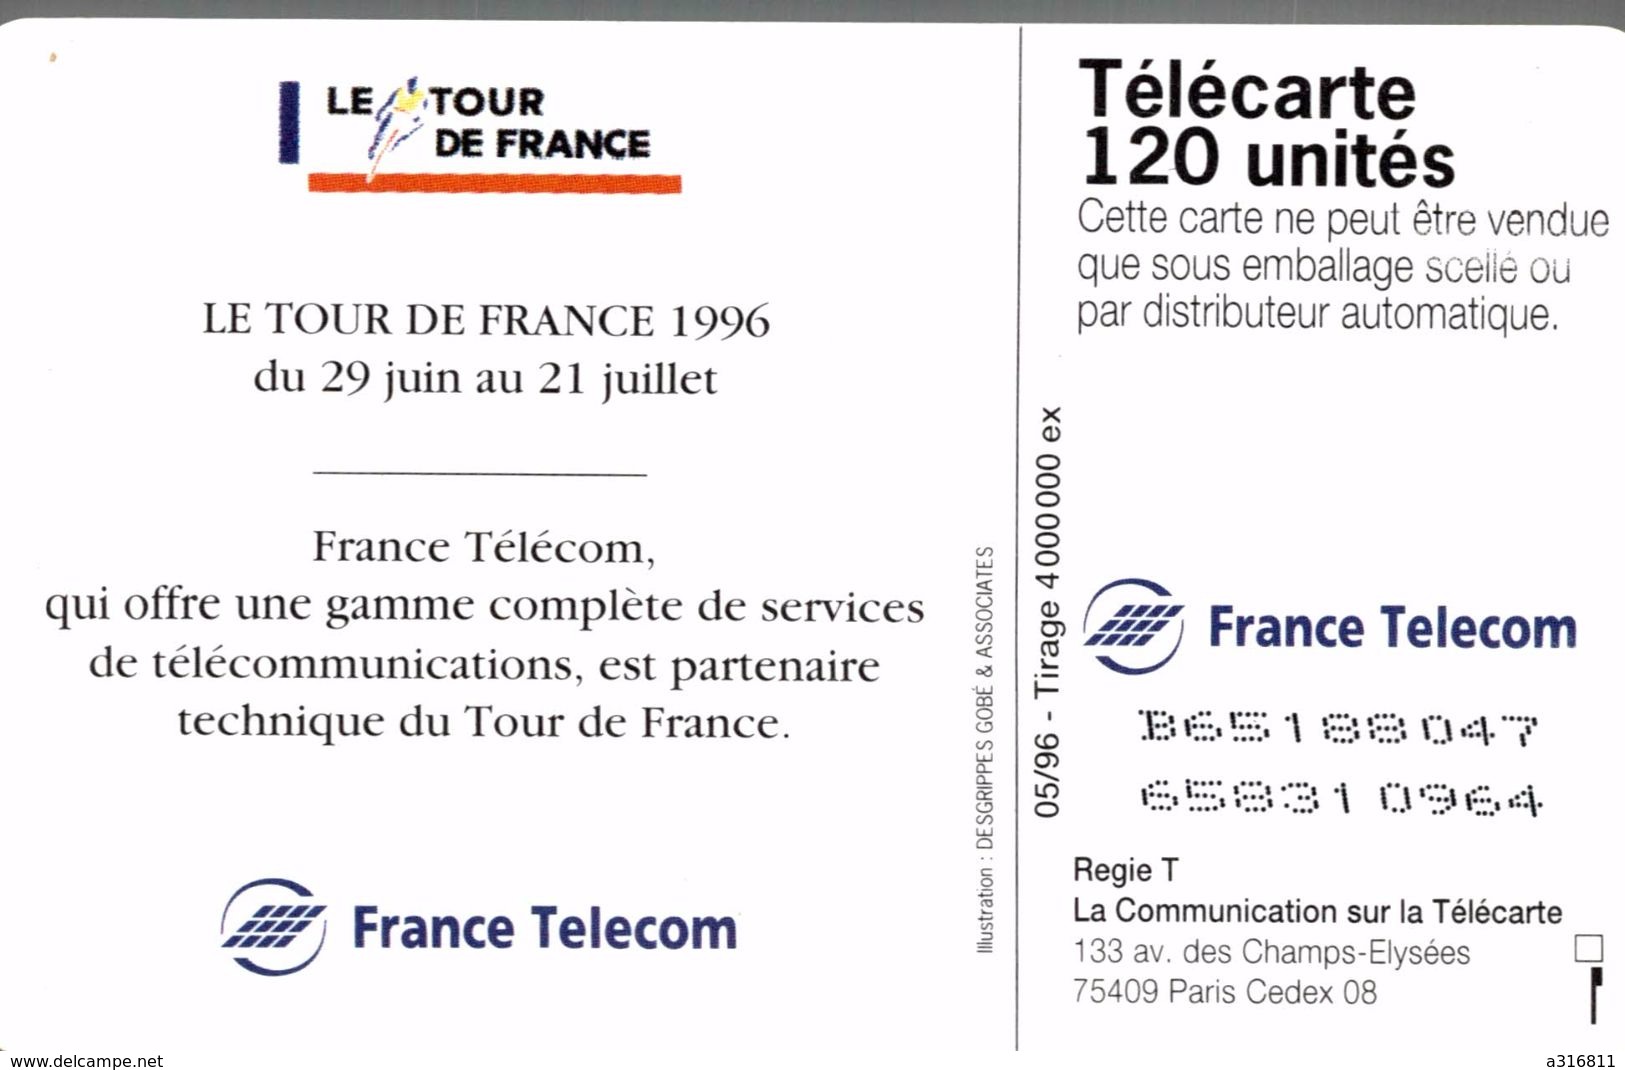 LE TOUR DE FRANCE 96 - 120 Unités 